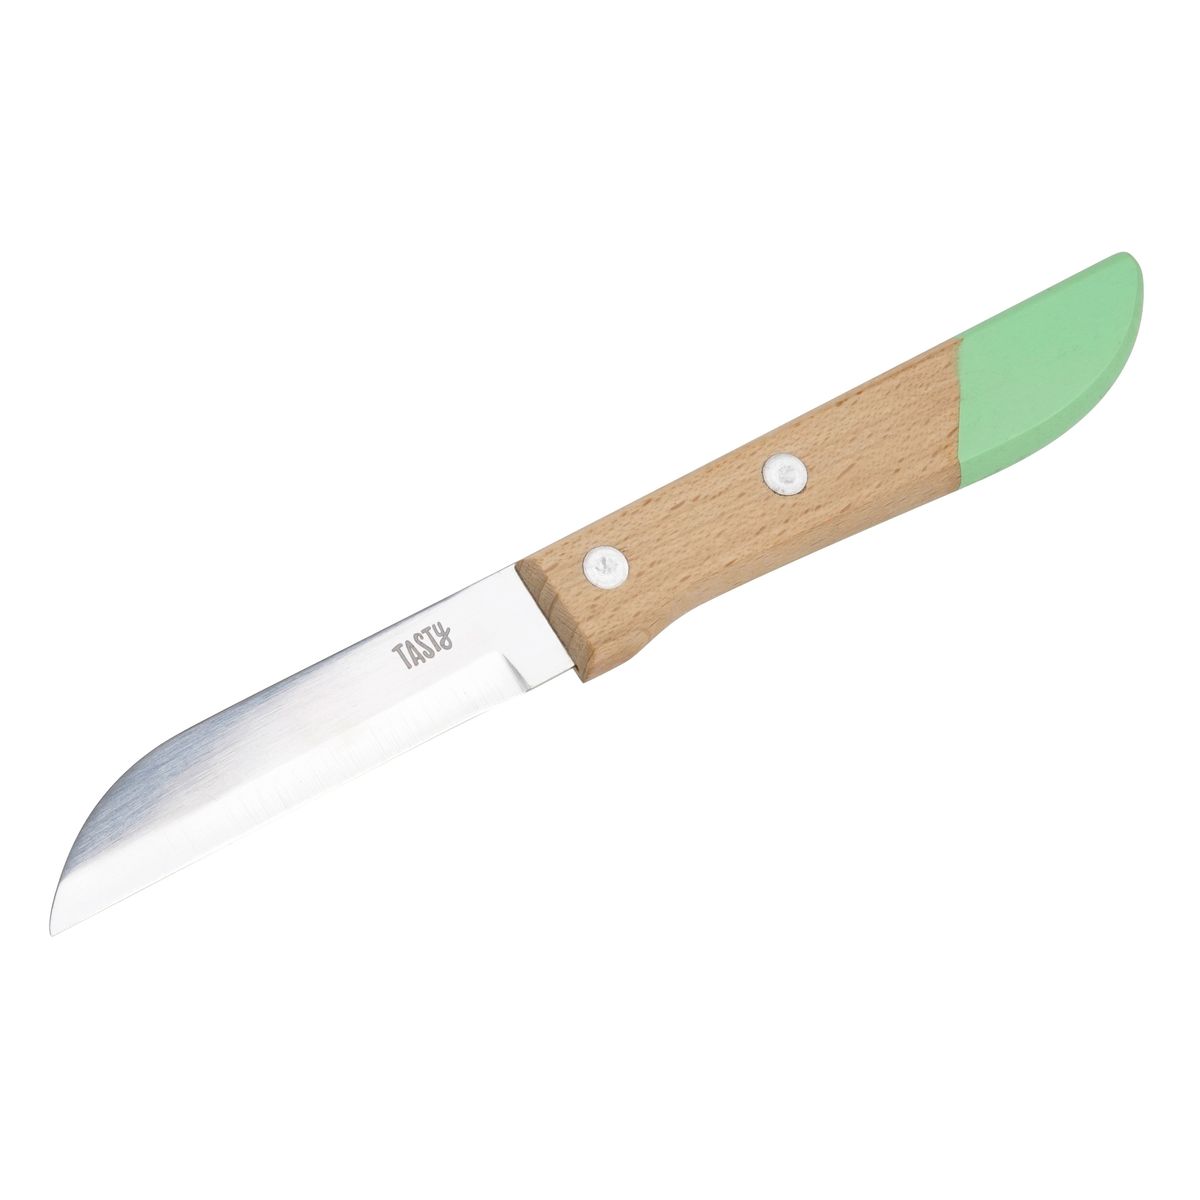 Petit couteau de cuisine manche en bois 17,5 cm